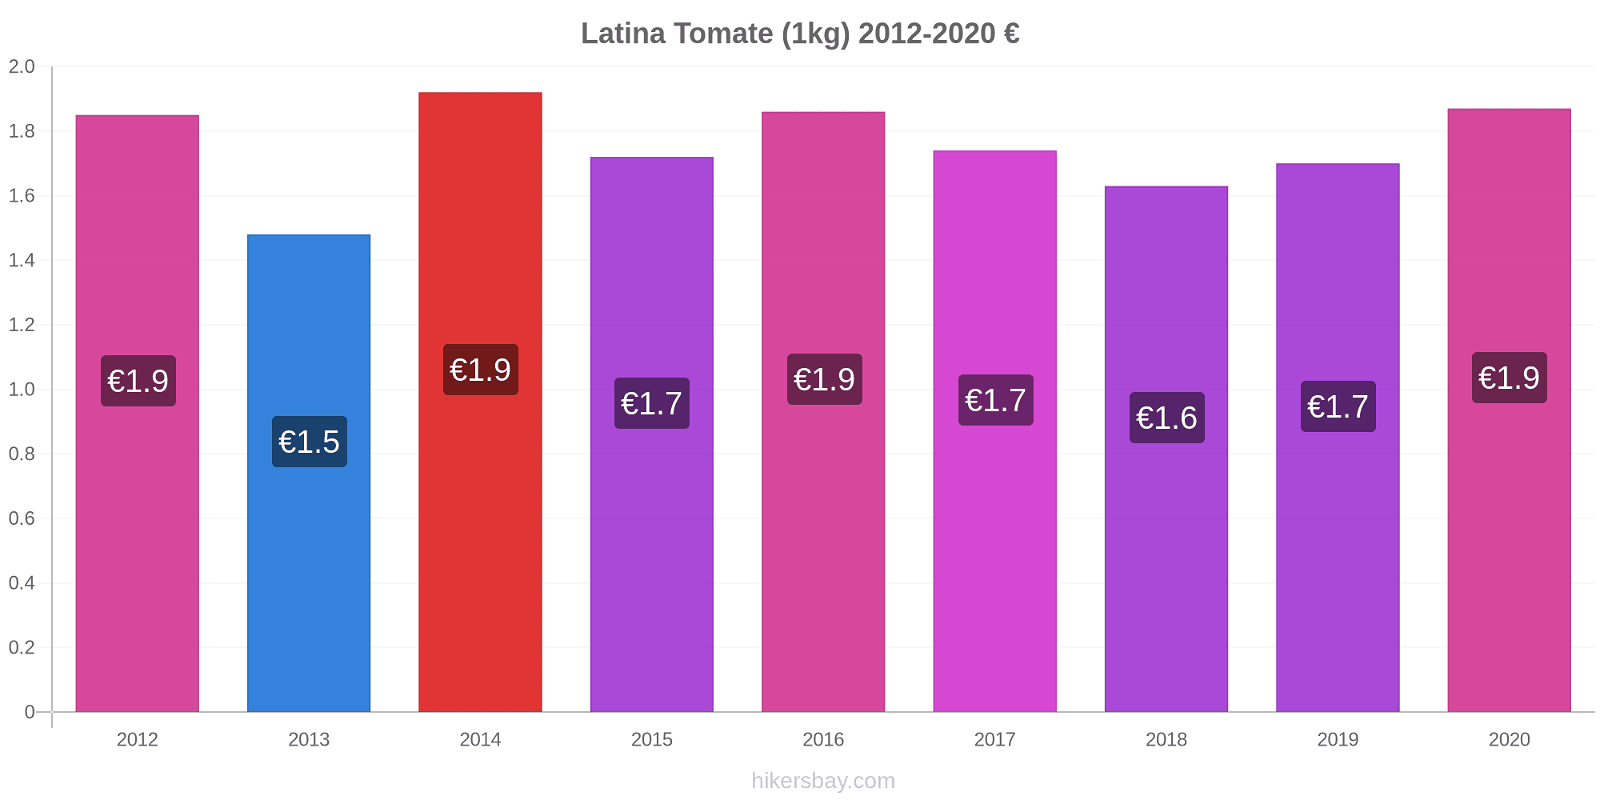 Latina modificări de preț Tomate (1kg) hikersbay.com